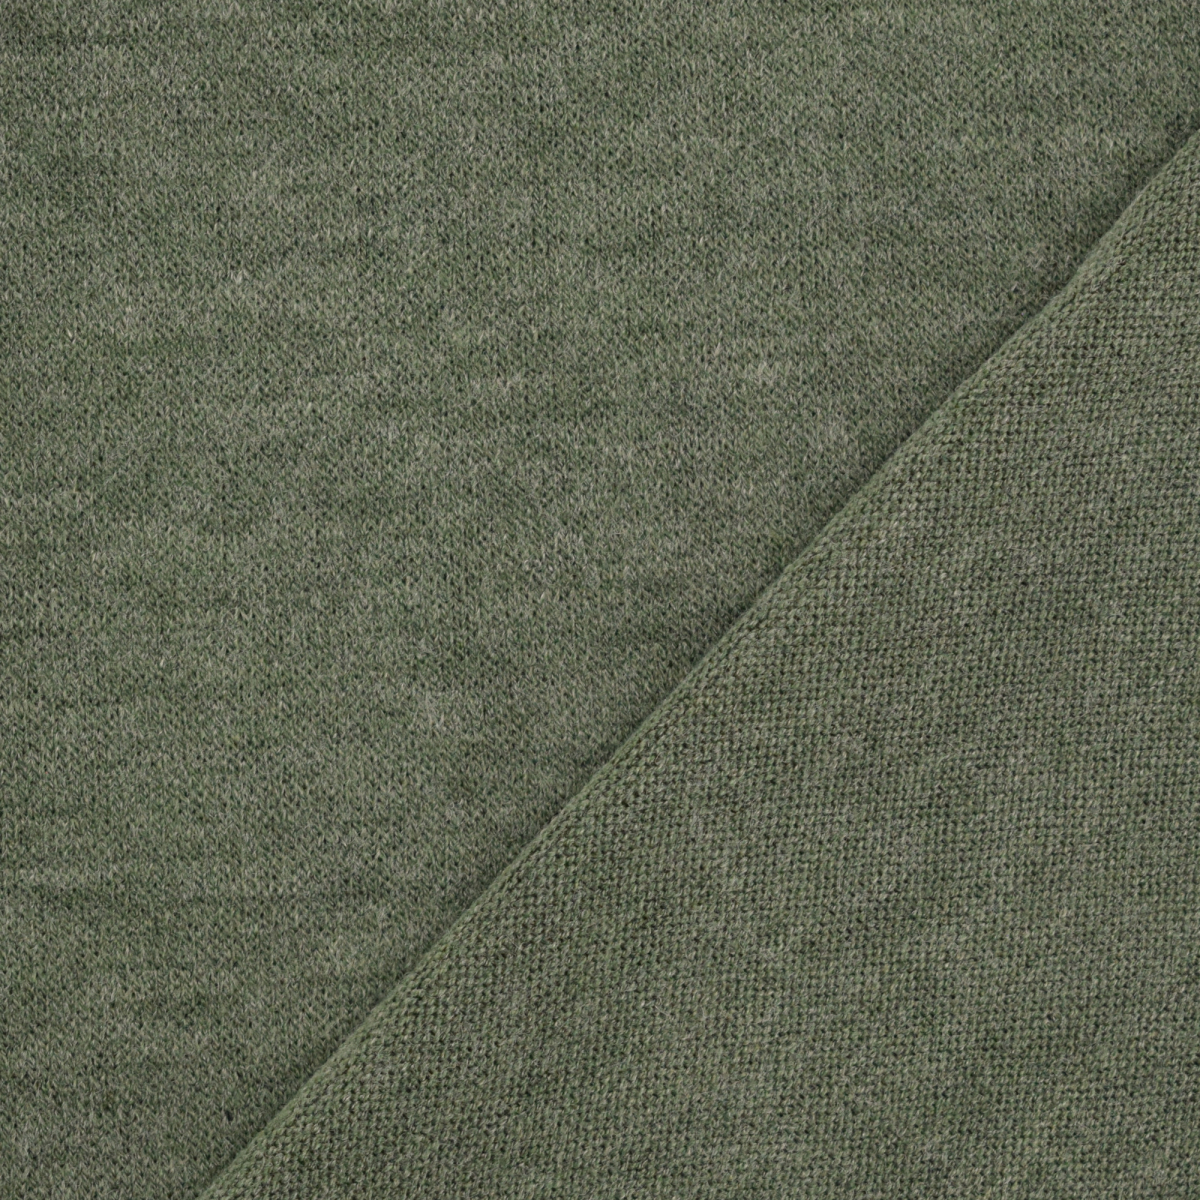 Black Merino Wool and Tencel Jersey - Wool Knits - Jersey/Knits